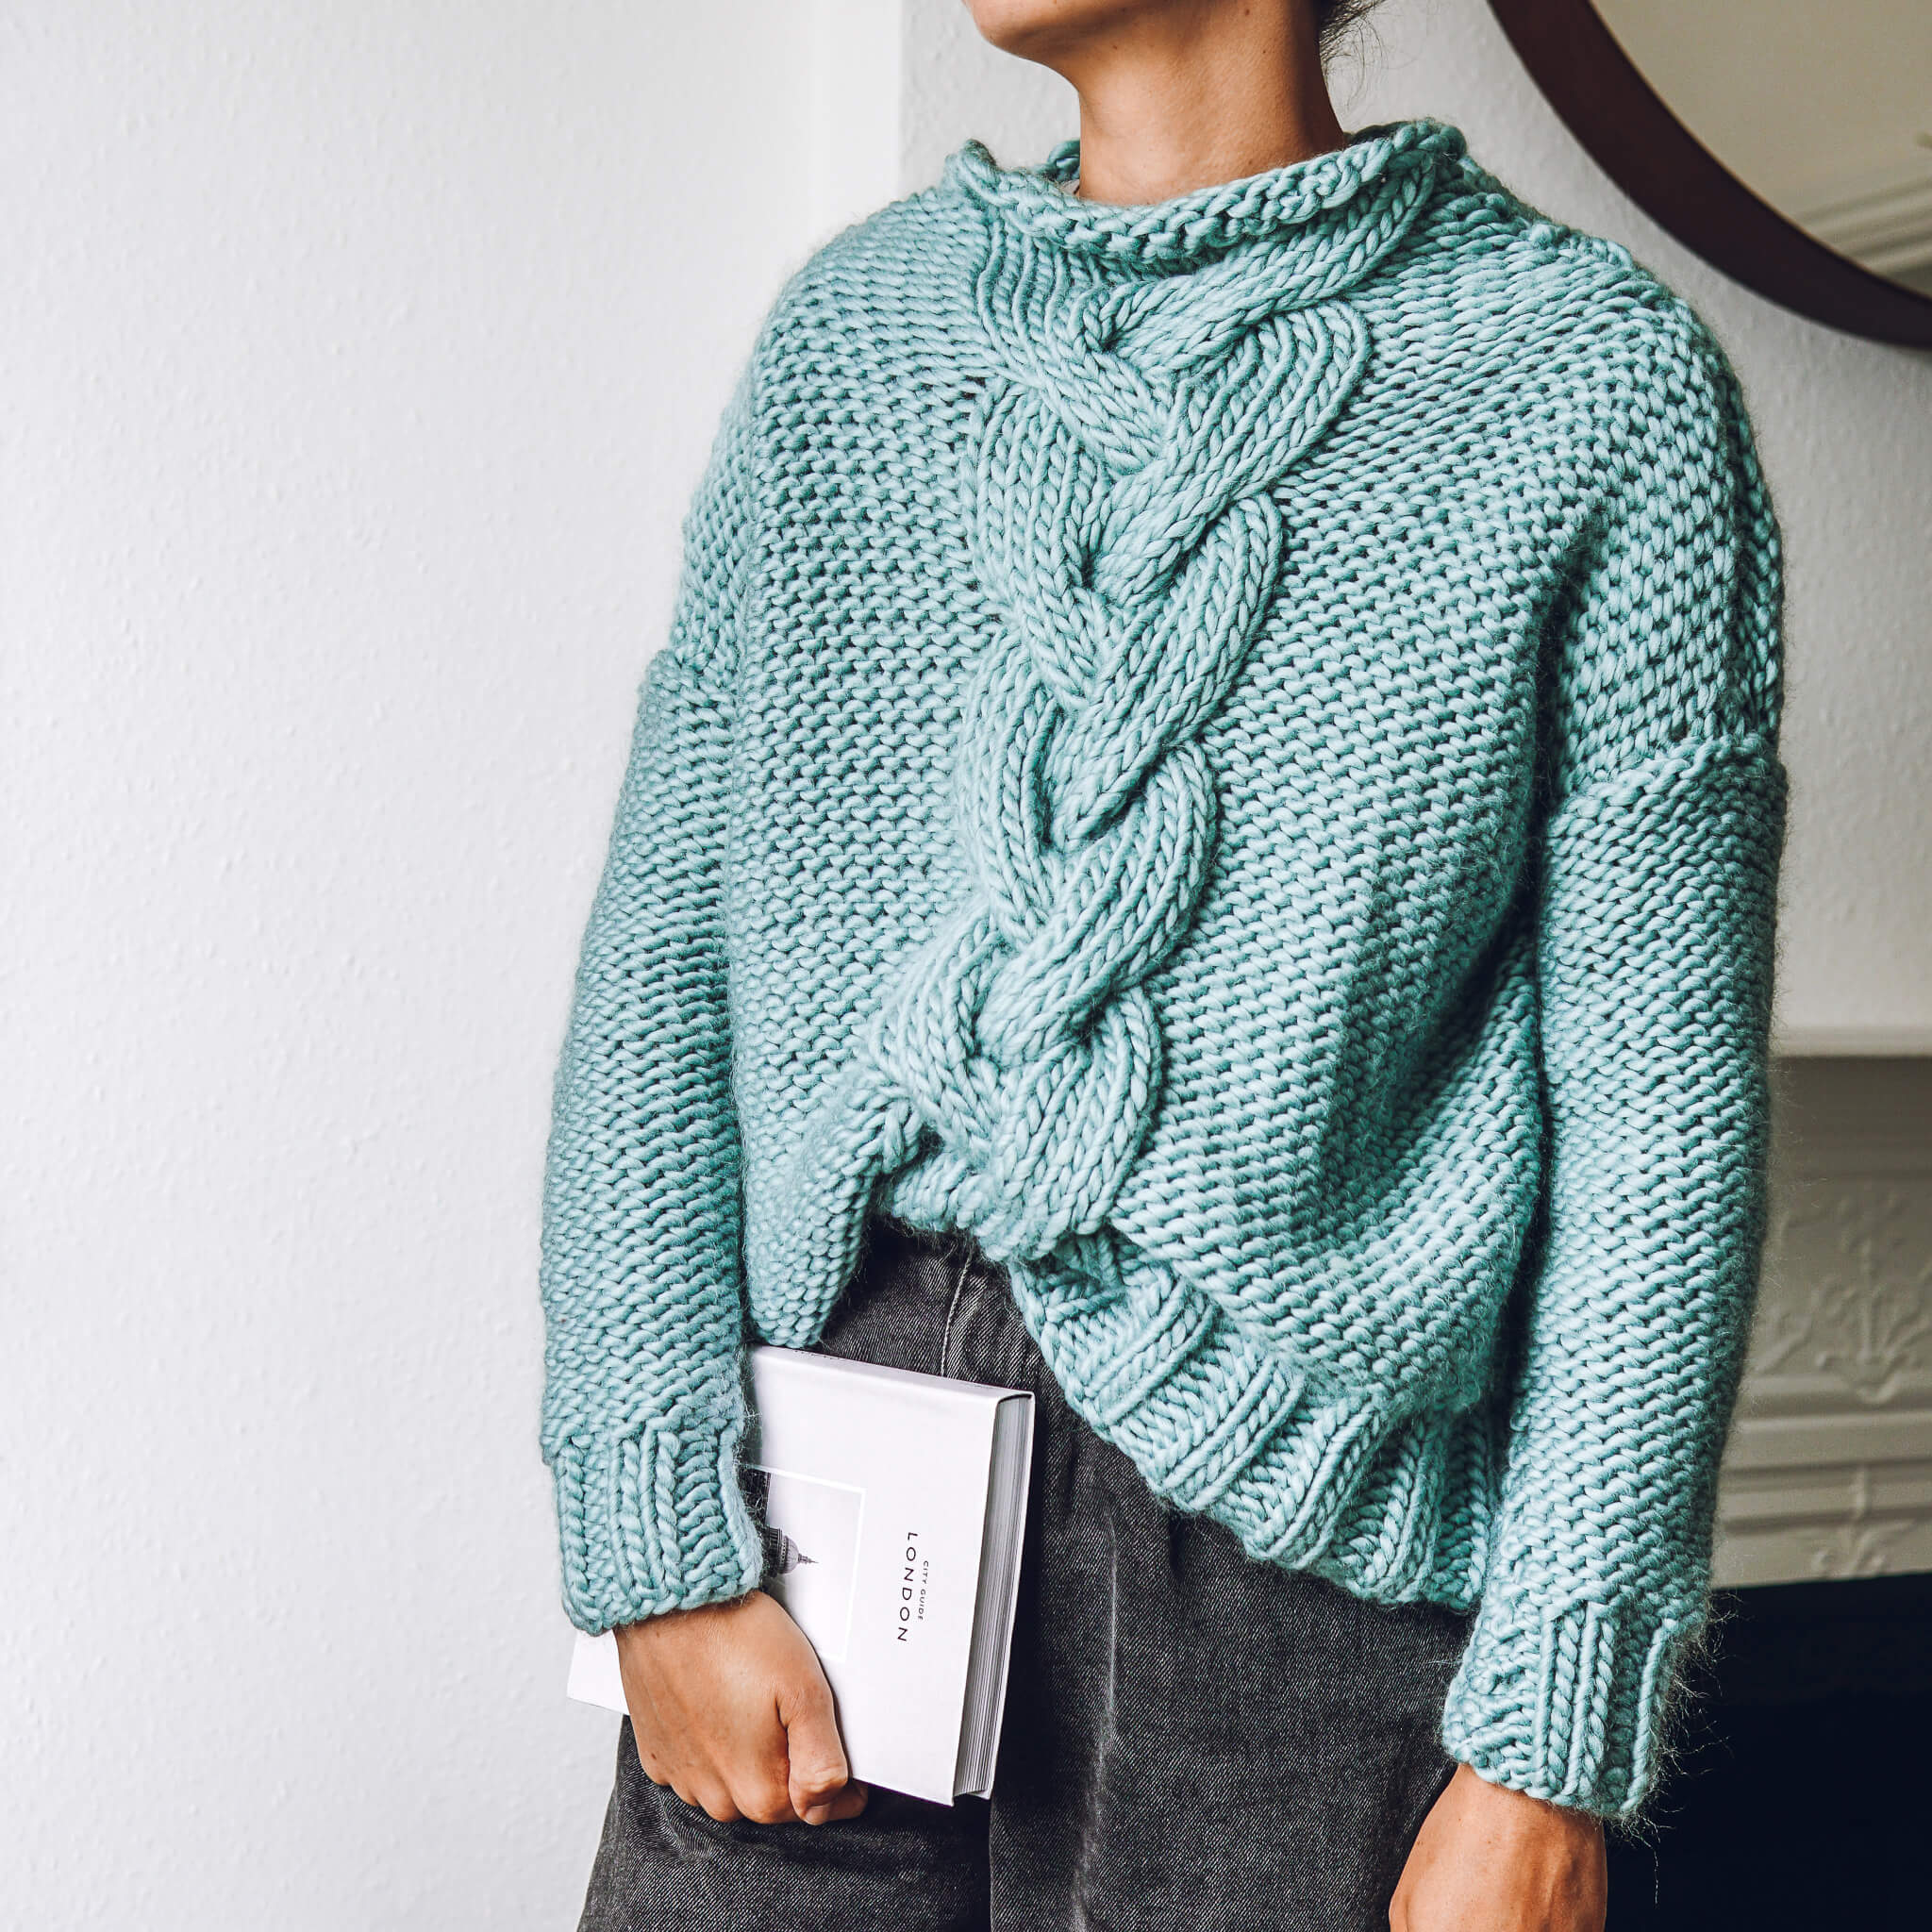 Knitting Basics - Lauren Aston Designs